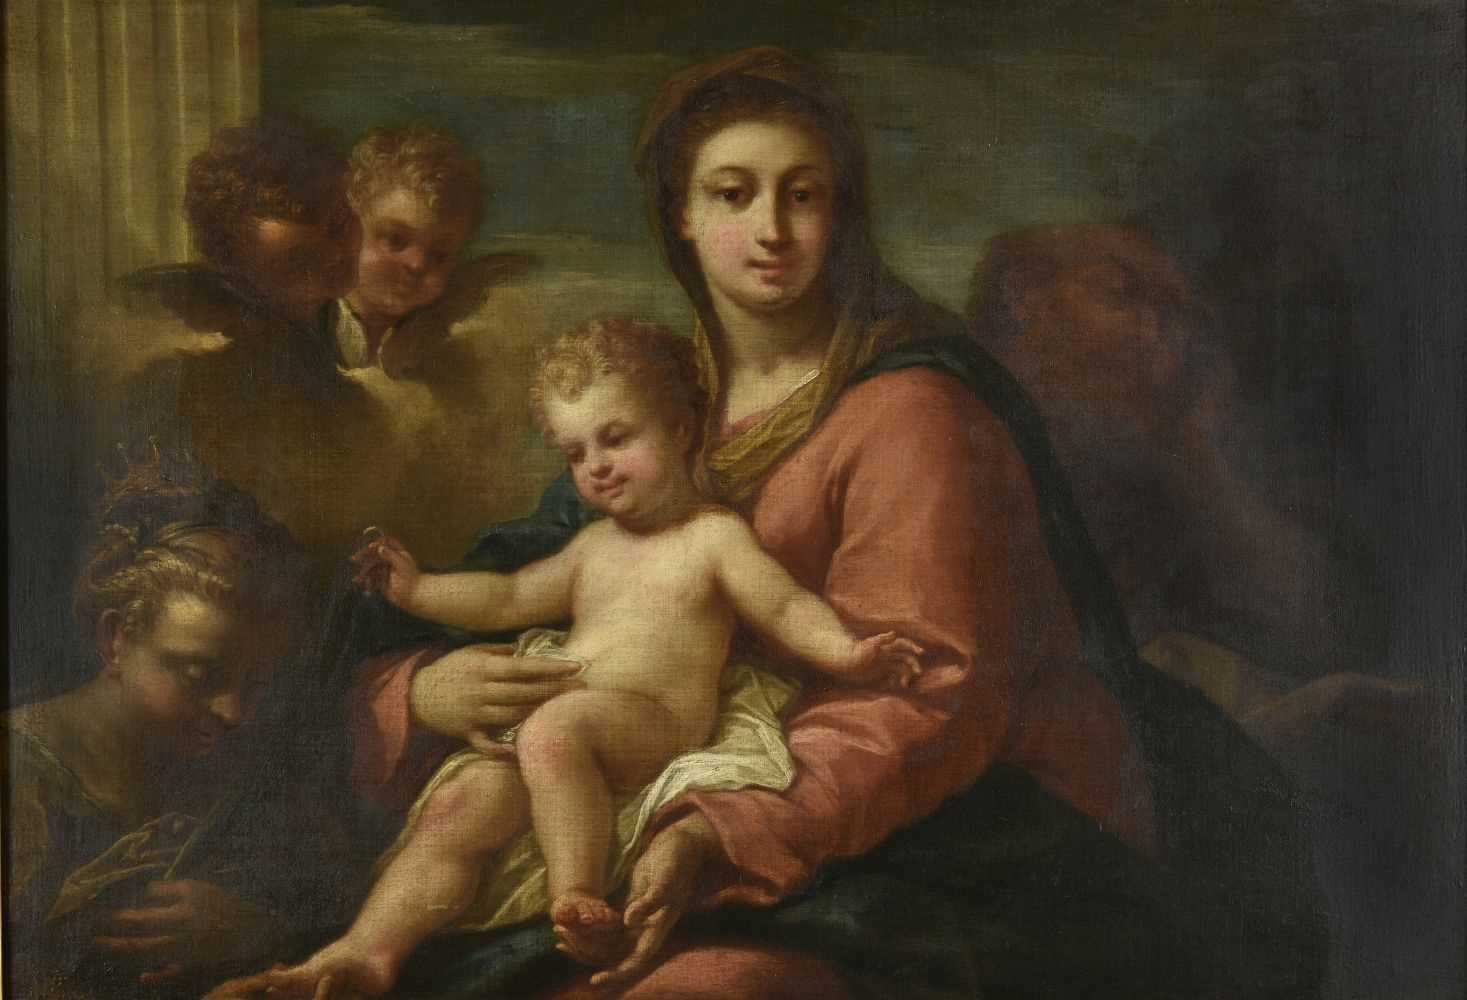 210 - Italian School. The Holy Family, 17th century,